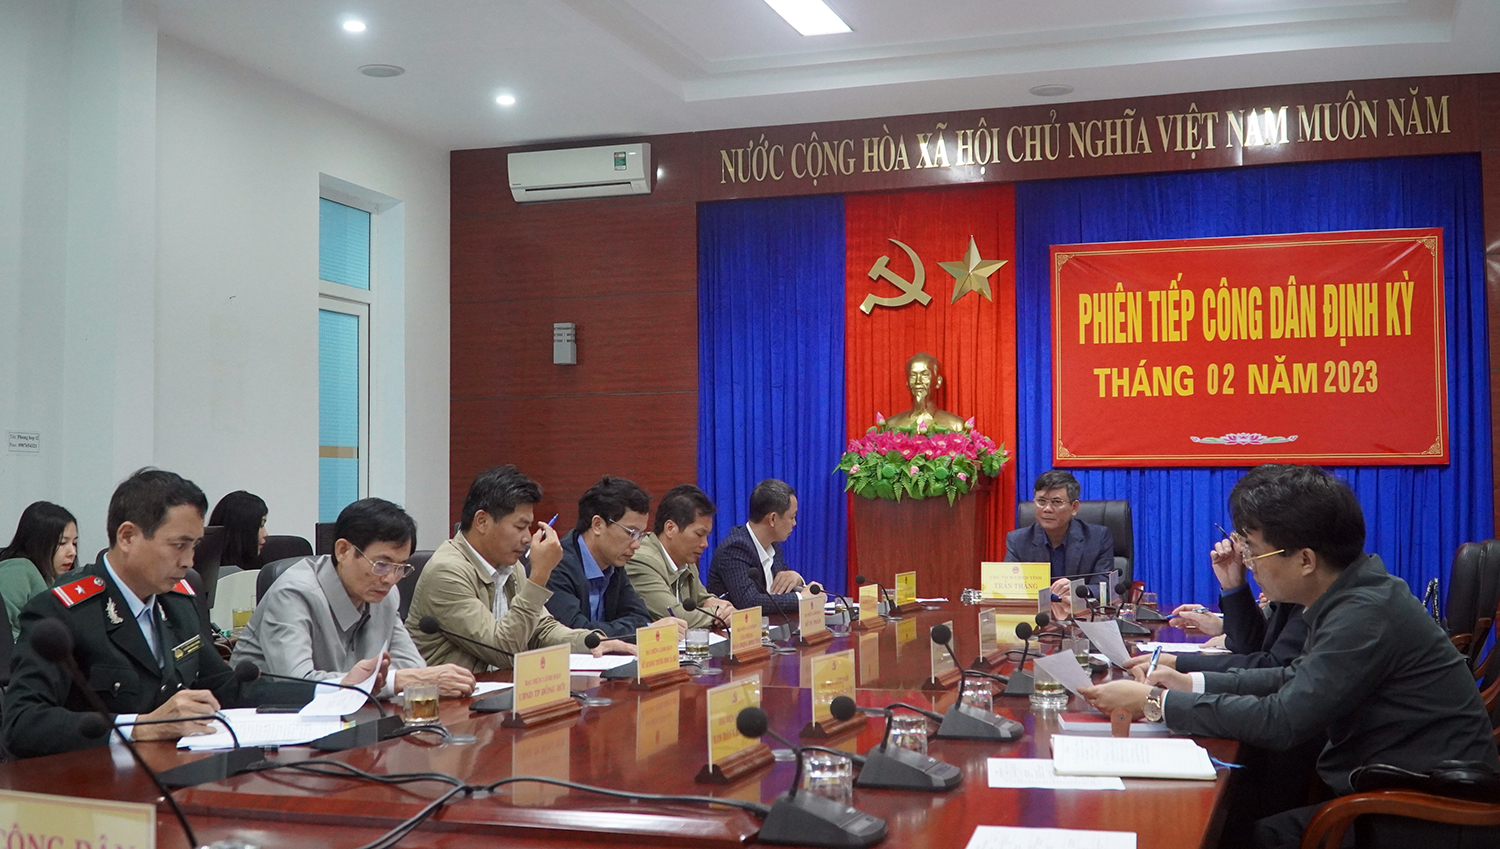  Toàn cảnh phiên tiếp công dân của đồng chí Chủ tịch UBND tỉnh Trần Thắng